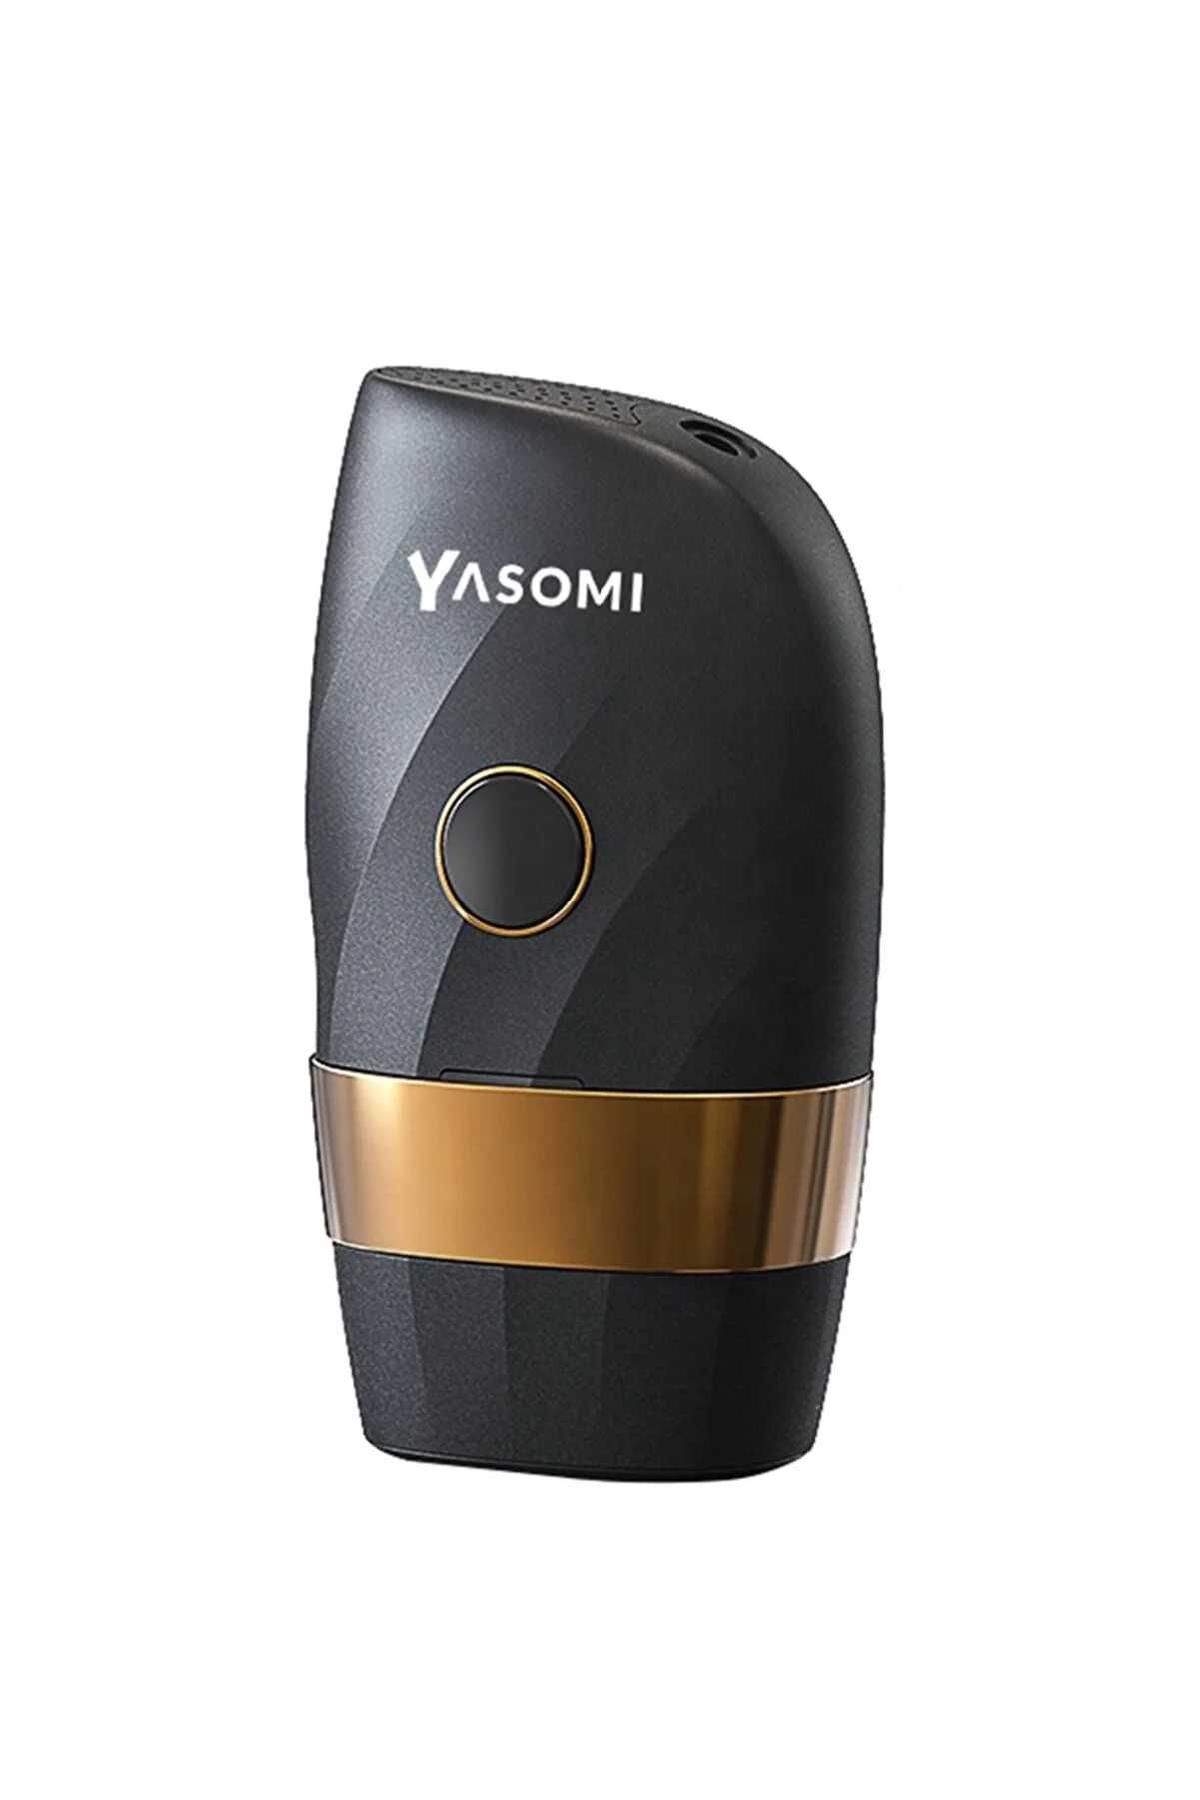 دستگاه لیزر موهای زائد Yasomi کد.1012